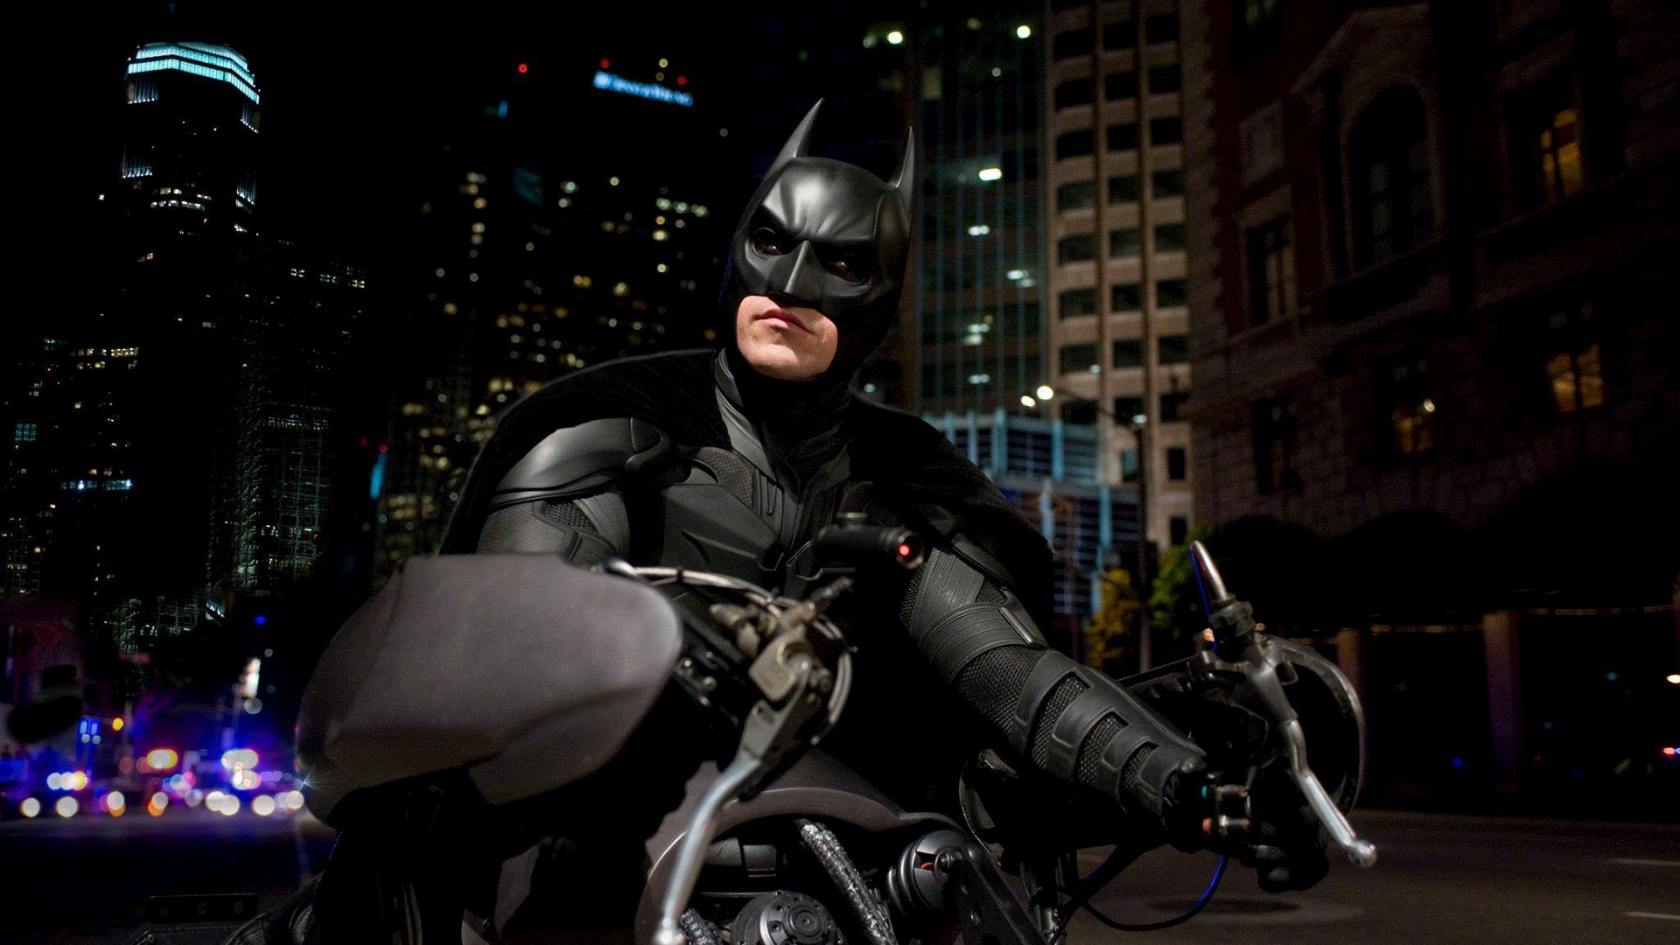 Batman on Bike for 1680 x 945 HDTV resolution